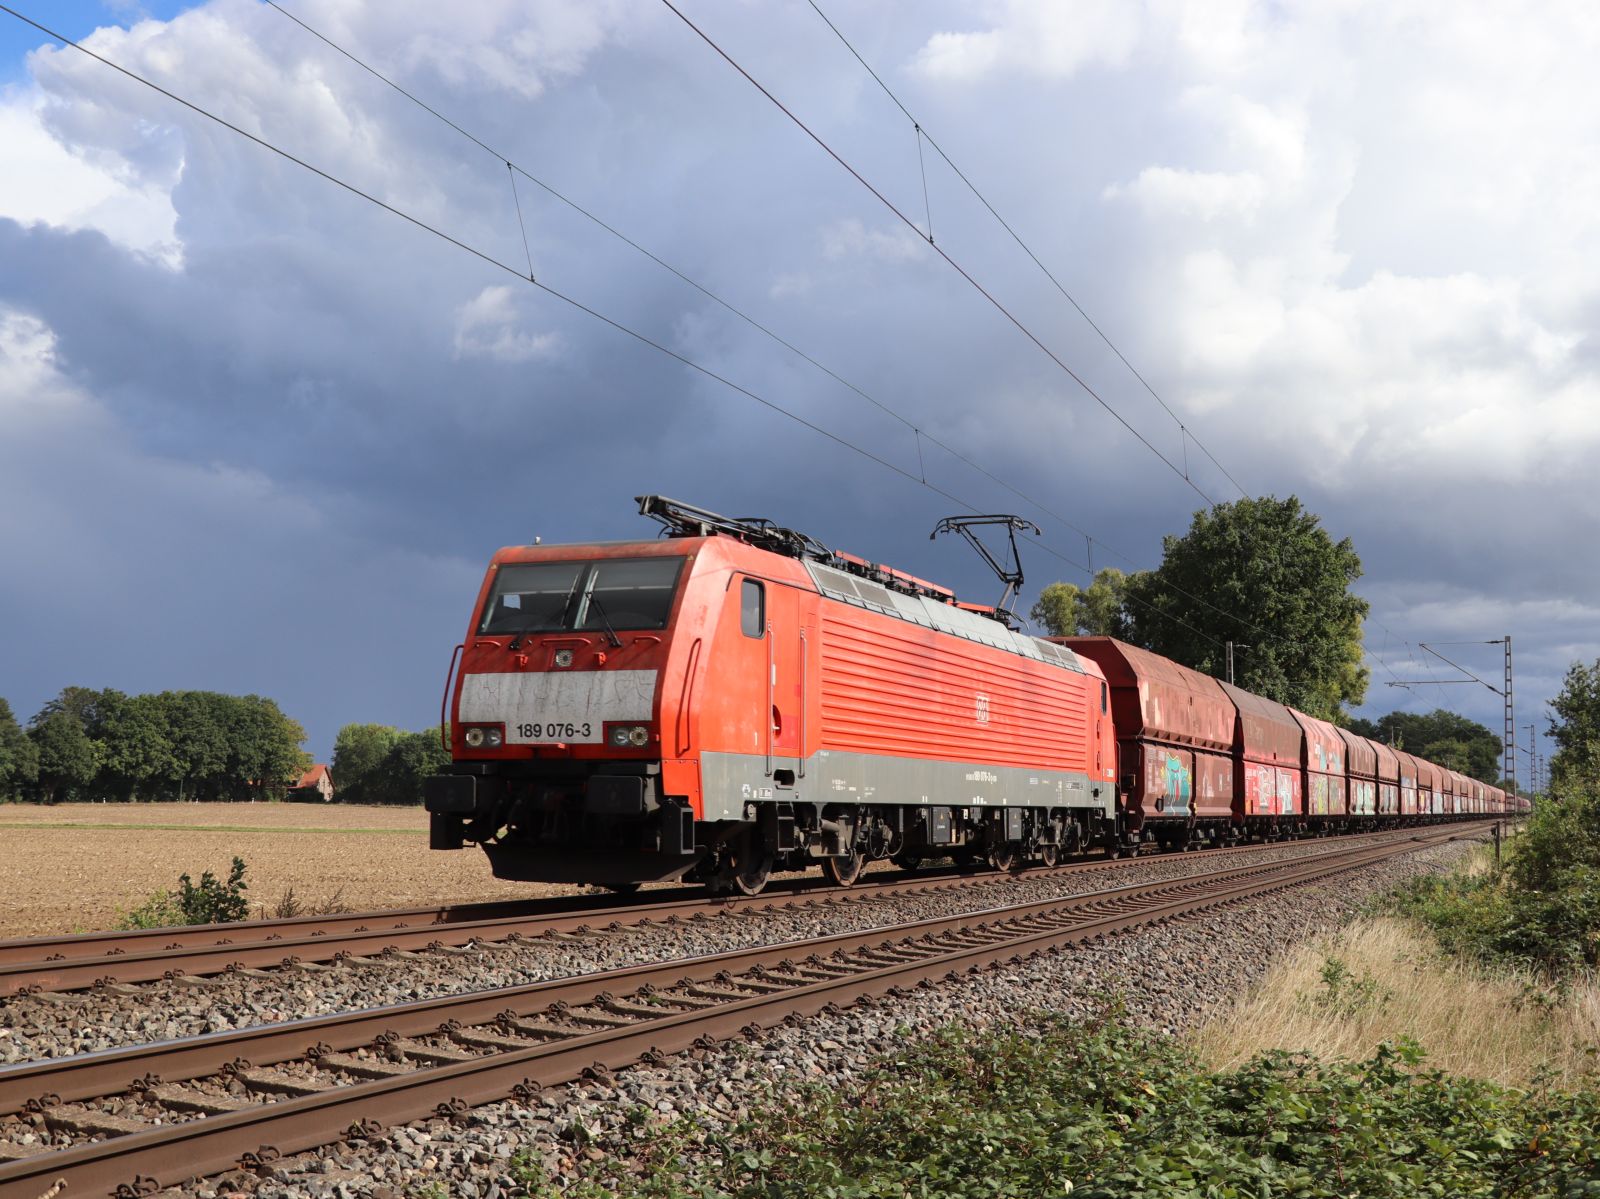 DB Cargo Lokomotive 189 076-3 Wasserstrasse, Hamminkeln 16-09-2022.

DB Cargo locomotief 189 076-3 Wasserstrasse, Hamminkeln 16-09-2022.